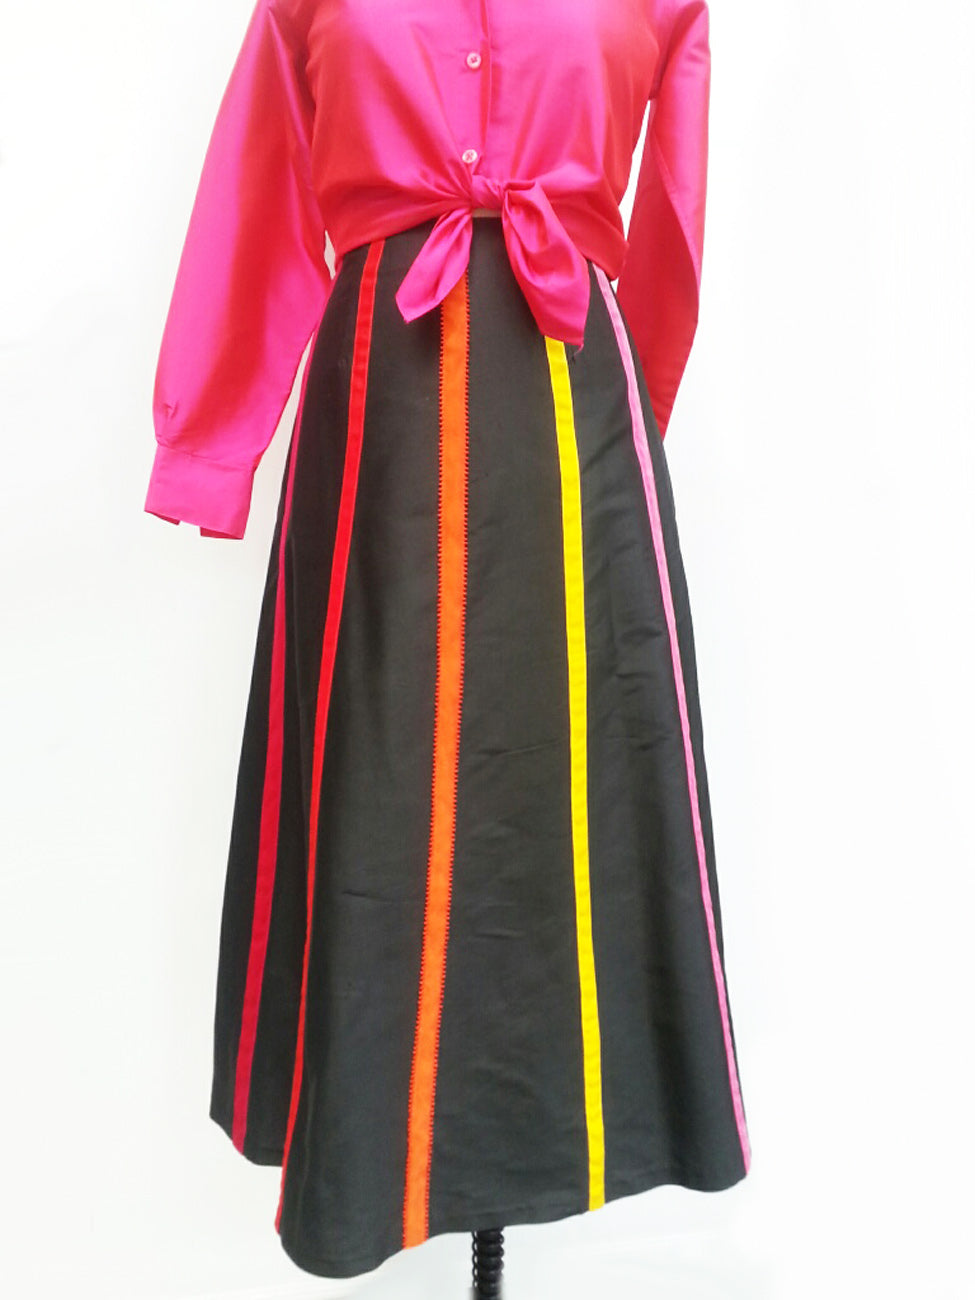 Carnival Skirt Thai Silk And Velvet Ribbons Black Bright